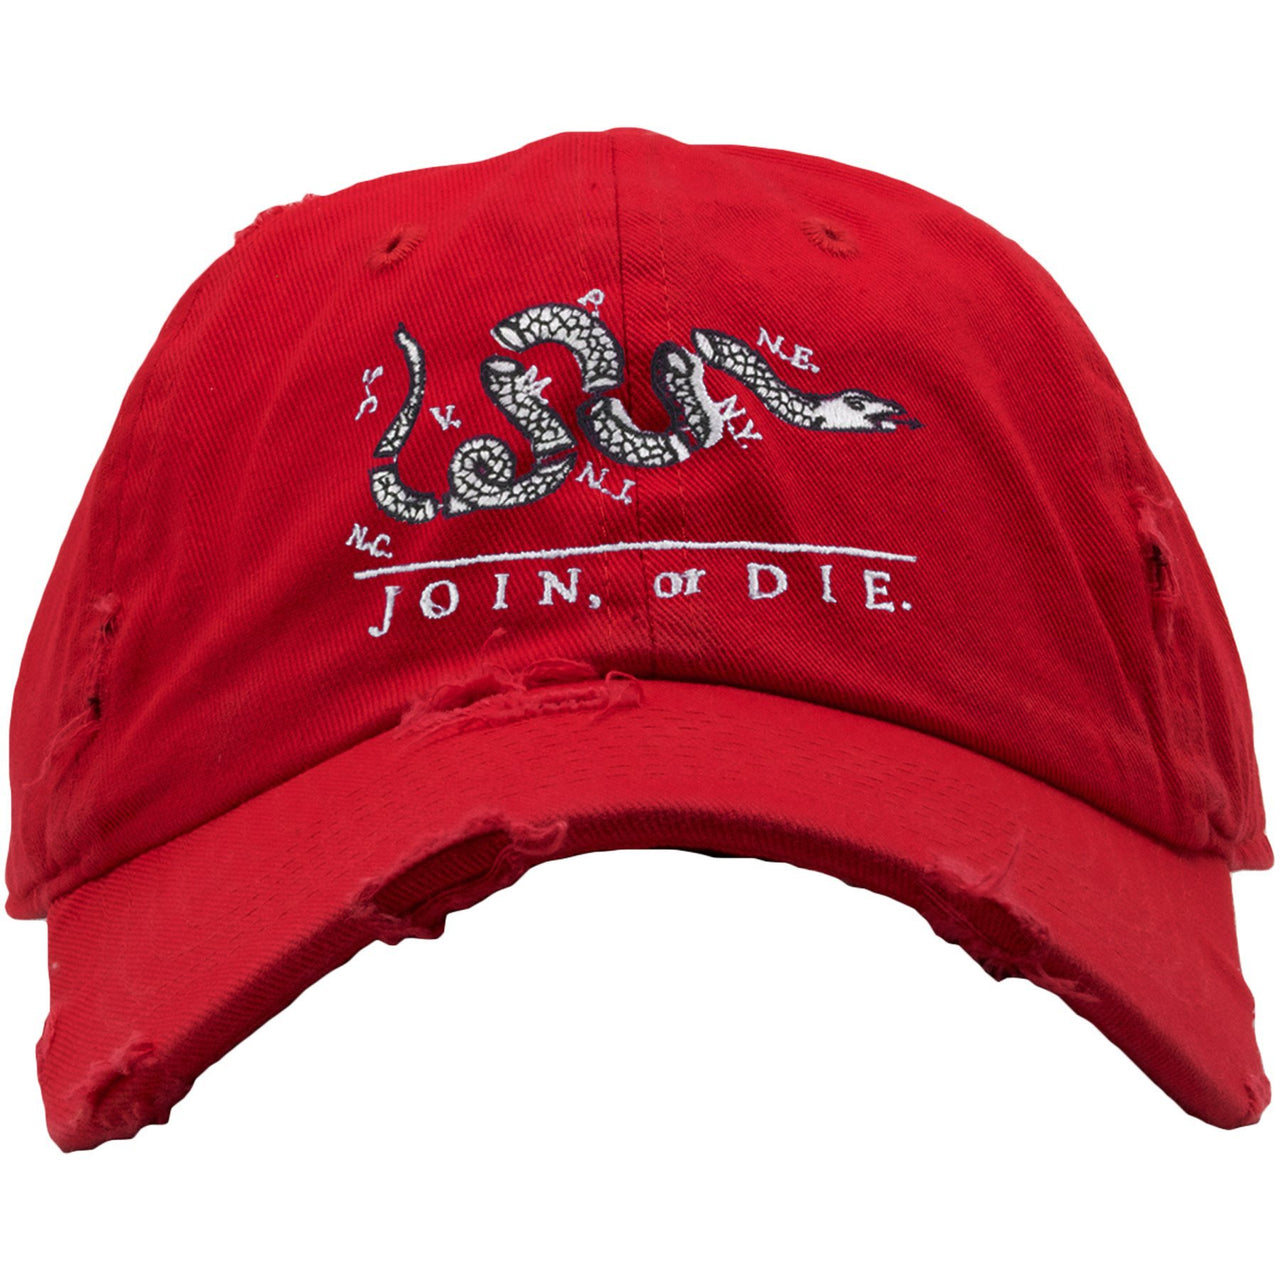 Snakeskin Foam Ones Distressed Dad Hat | Join or Die, Red